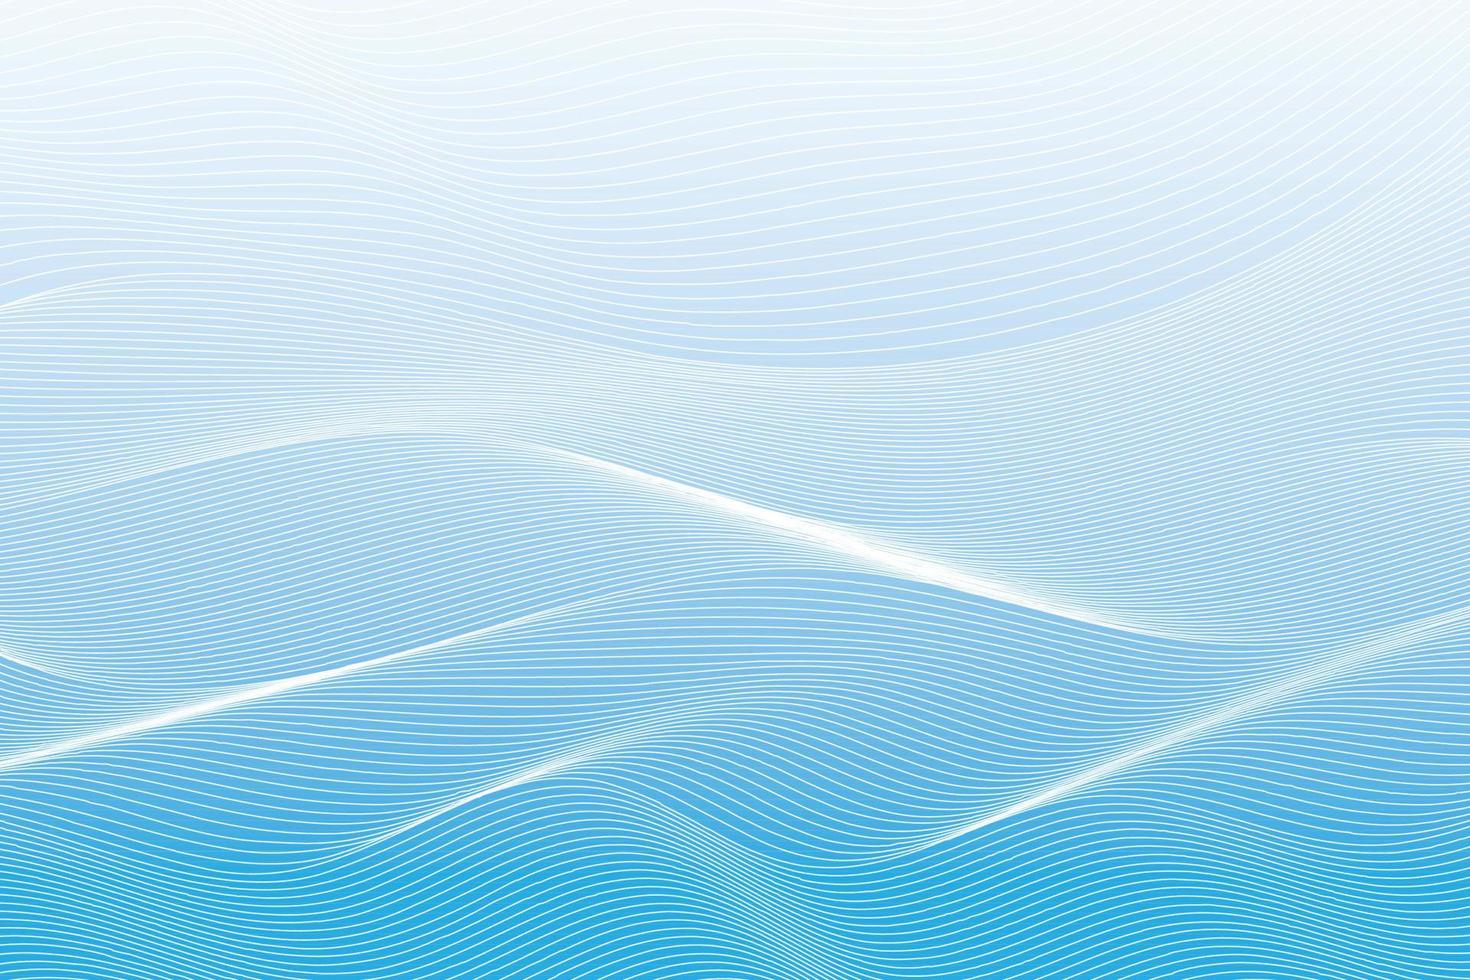 abstrakt vit och blå Färg, modern design Ränder bakgrund med geometrisk runda form, vågig mönster. vektor illustration.